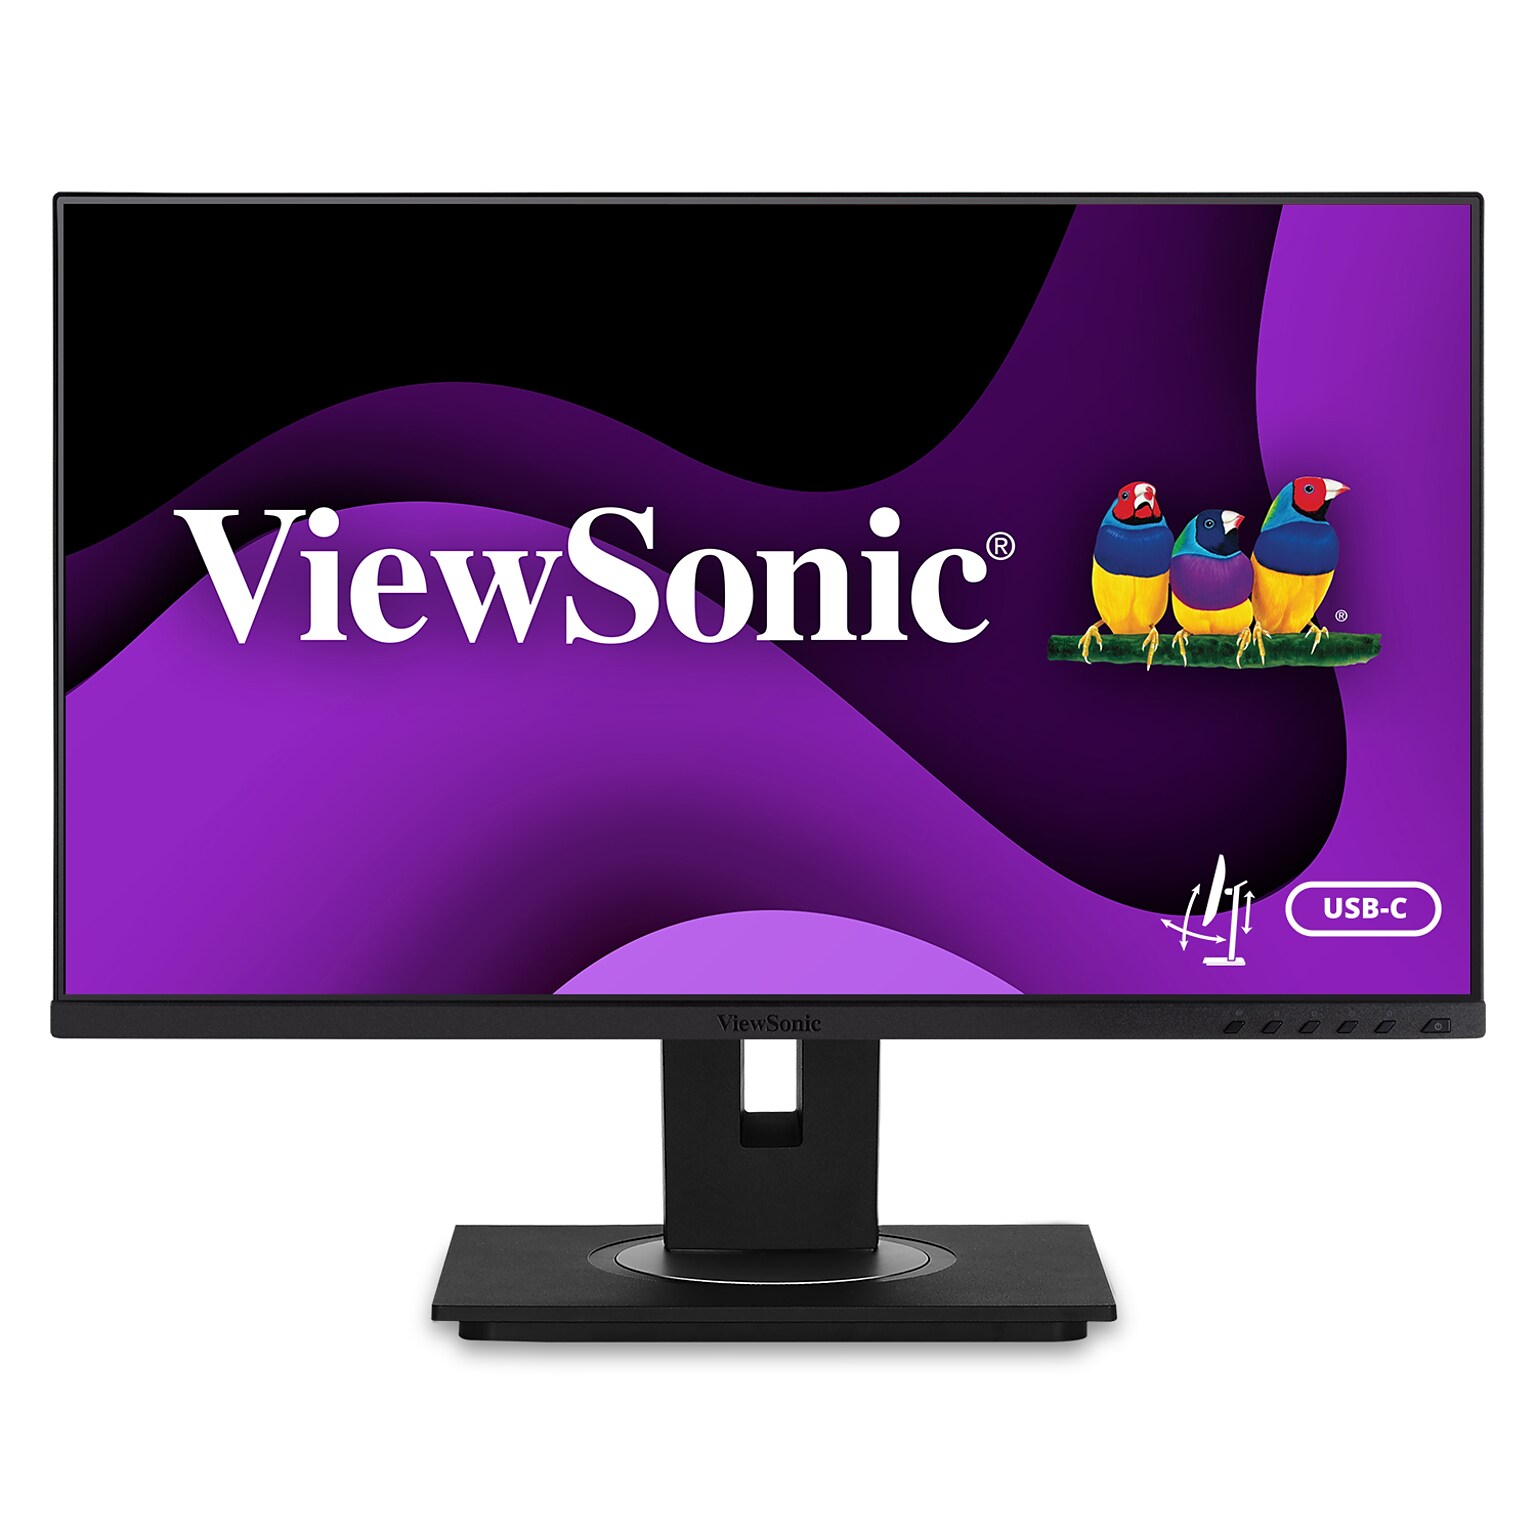 ViewSonic 24 60 Hz LED Monitor, Black (VG245)